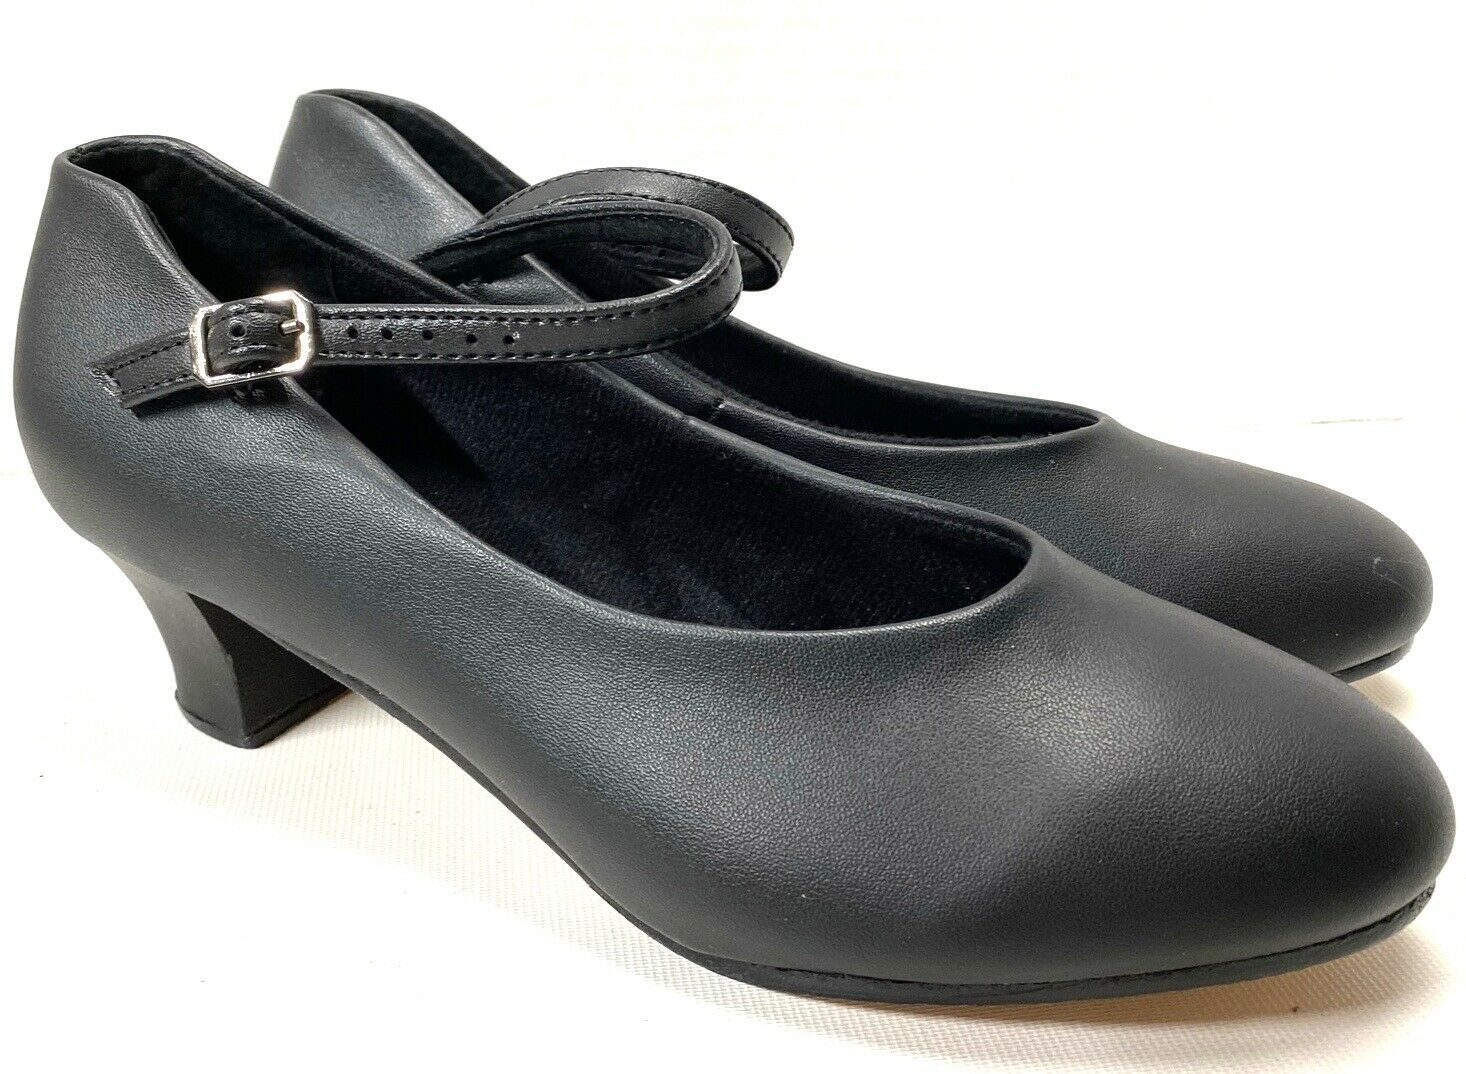 Balera Women's Black Character Shoes Mary Jane Size Size 7 Leather Nice Shape